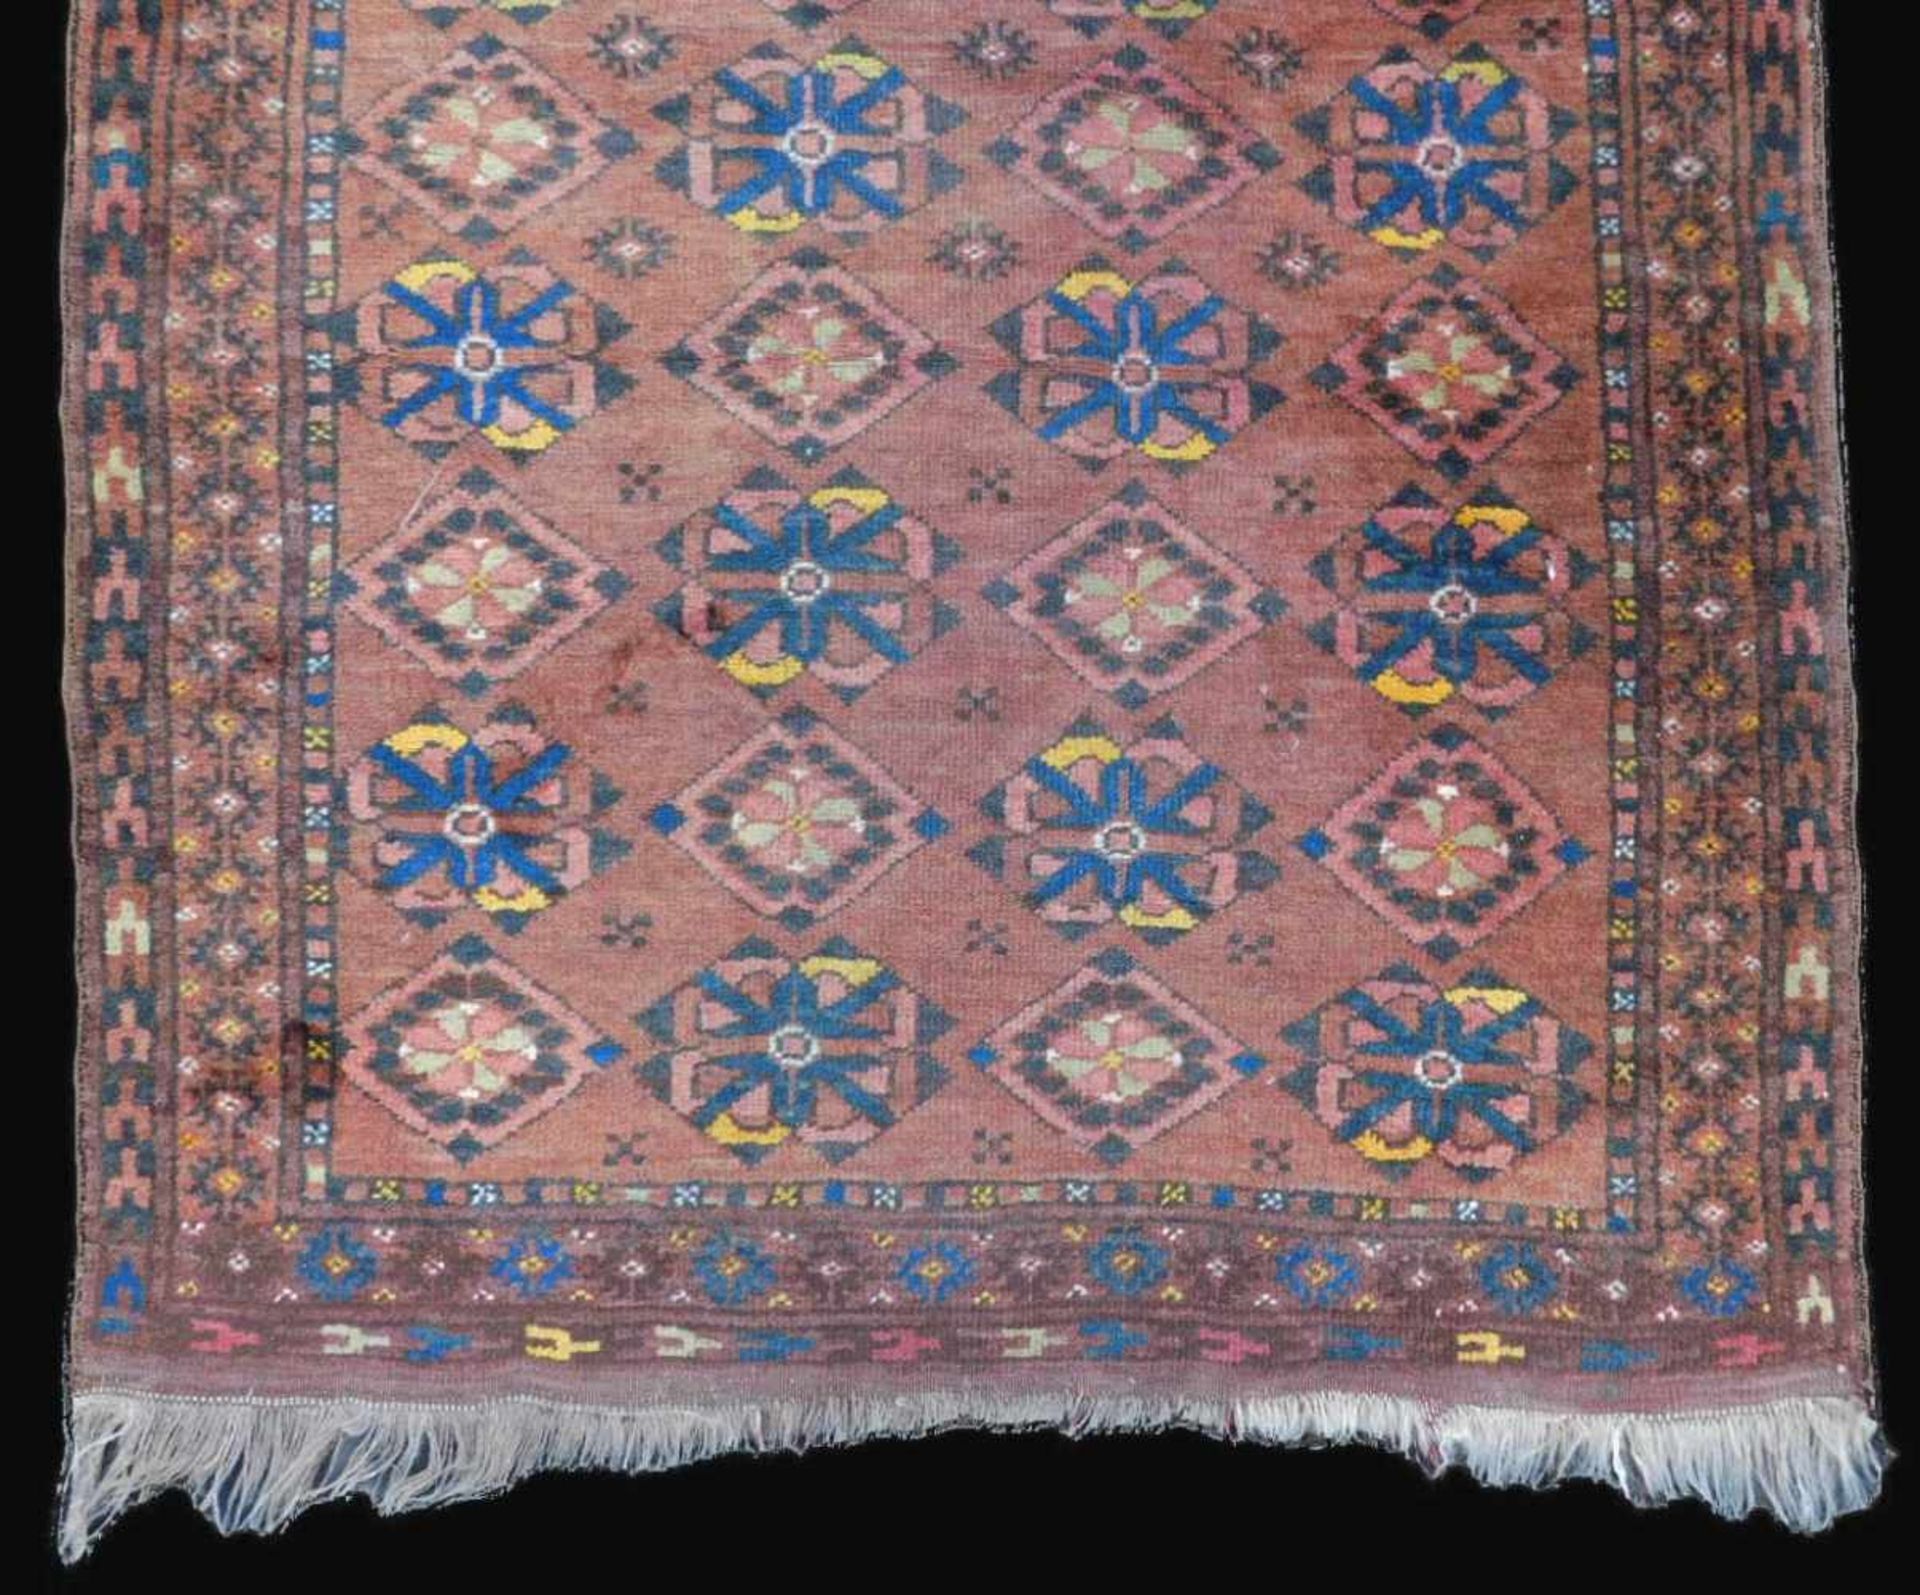 Ersari Stammesteppich. Turkmensitan / Afghanistan. Alt, um 1930. 145 cm x 93 cm. Handgeknüpft. Wolle - Bild 2 aus 5